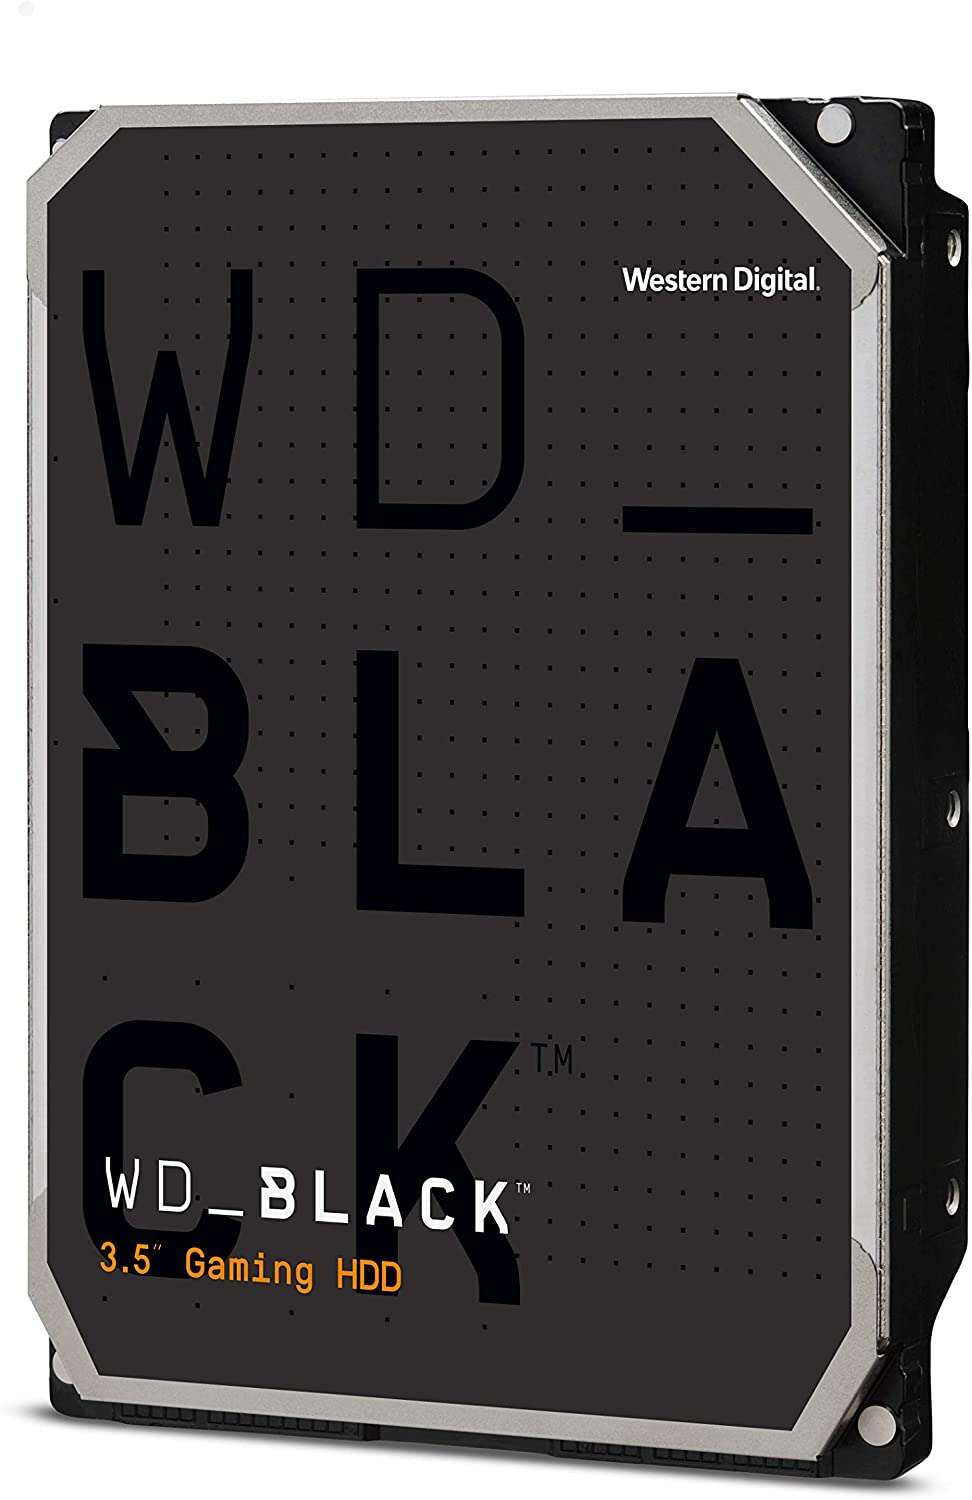 Western digital 6tb black sata3 3.5" gaming hdd